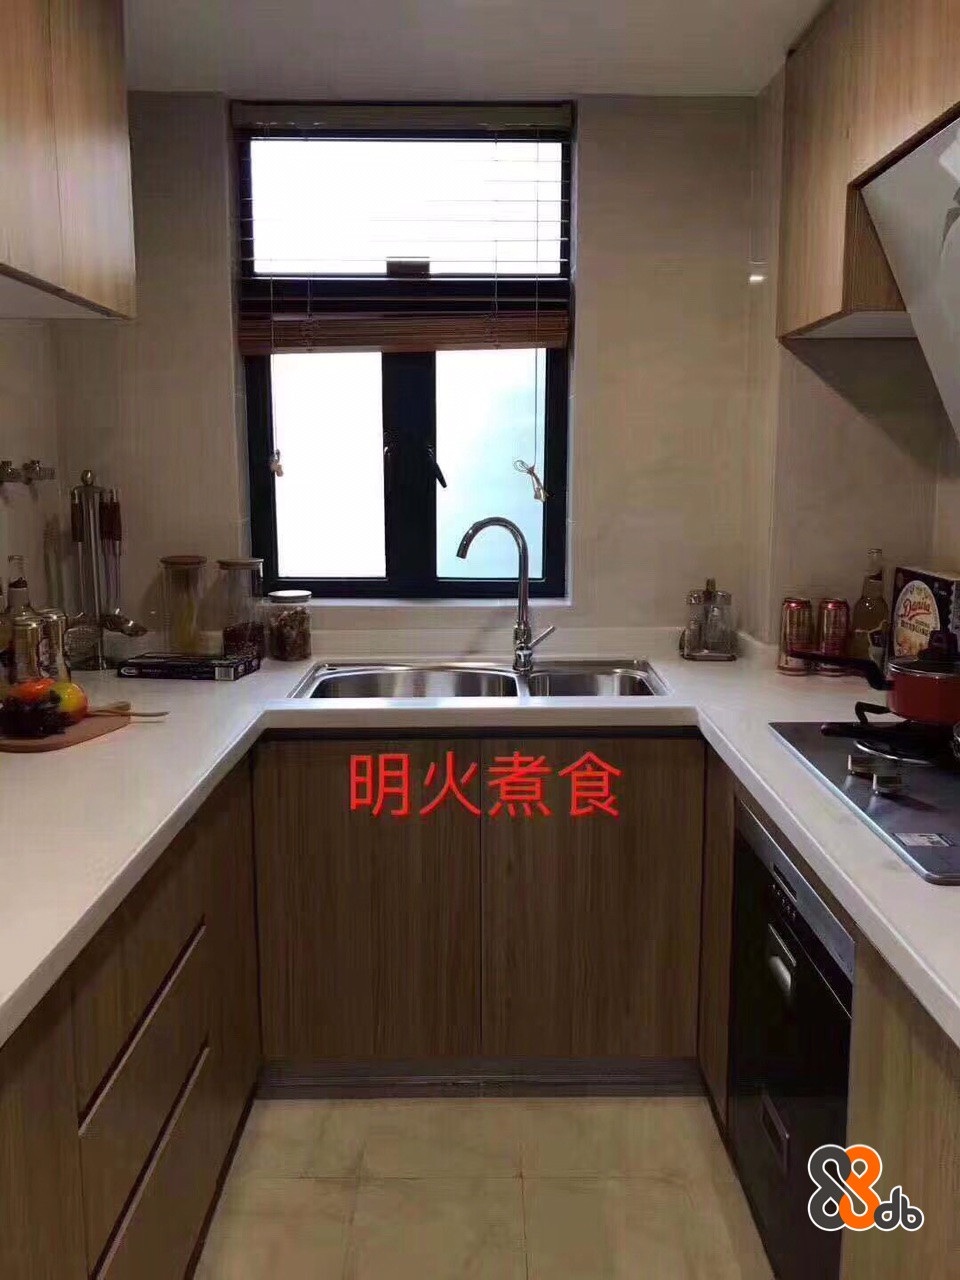 明火煮食  Countertop,Property,Room,Kitchen,Cabinetry